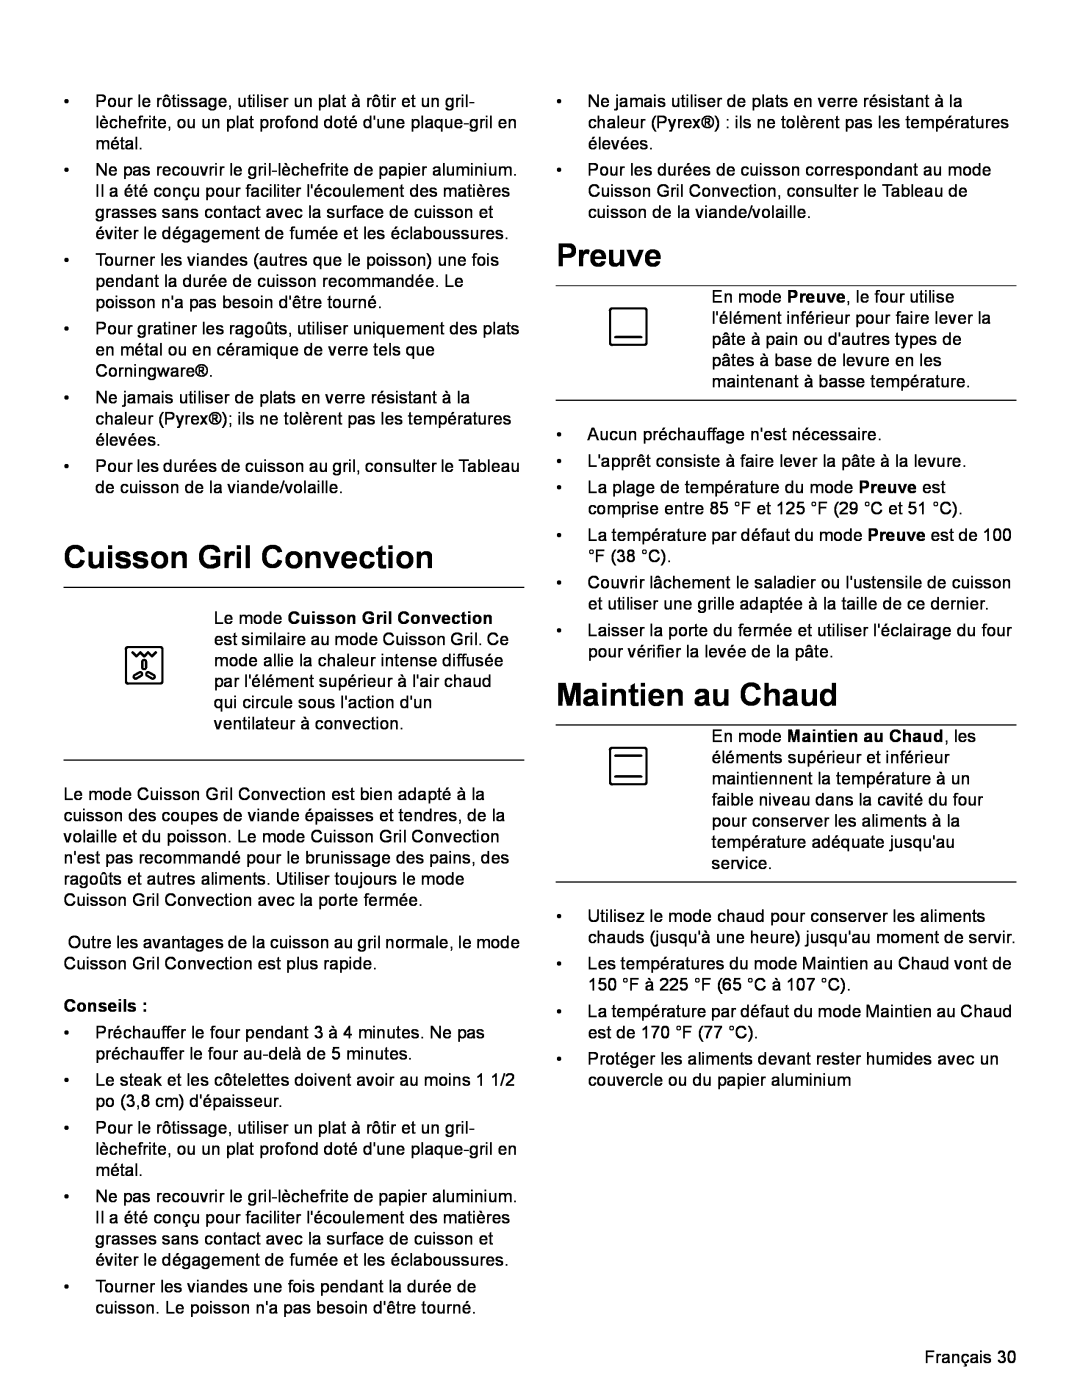 Bosch Appliances HDI8054U manual Cuisson Gril Convection, Preuve, En mode Maintien au Chaud, les, Conseils 